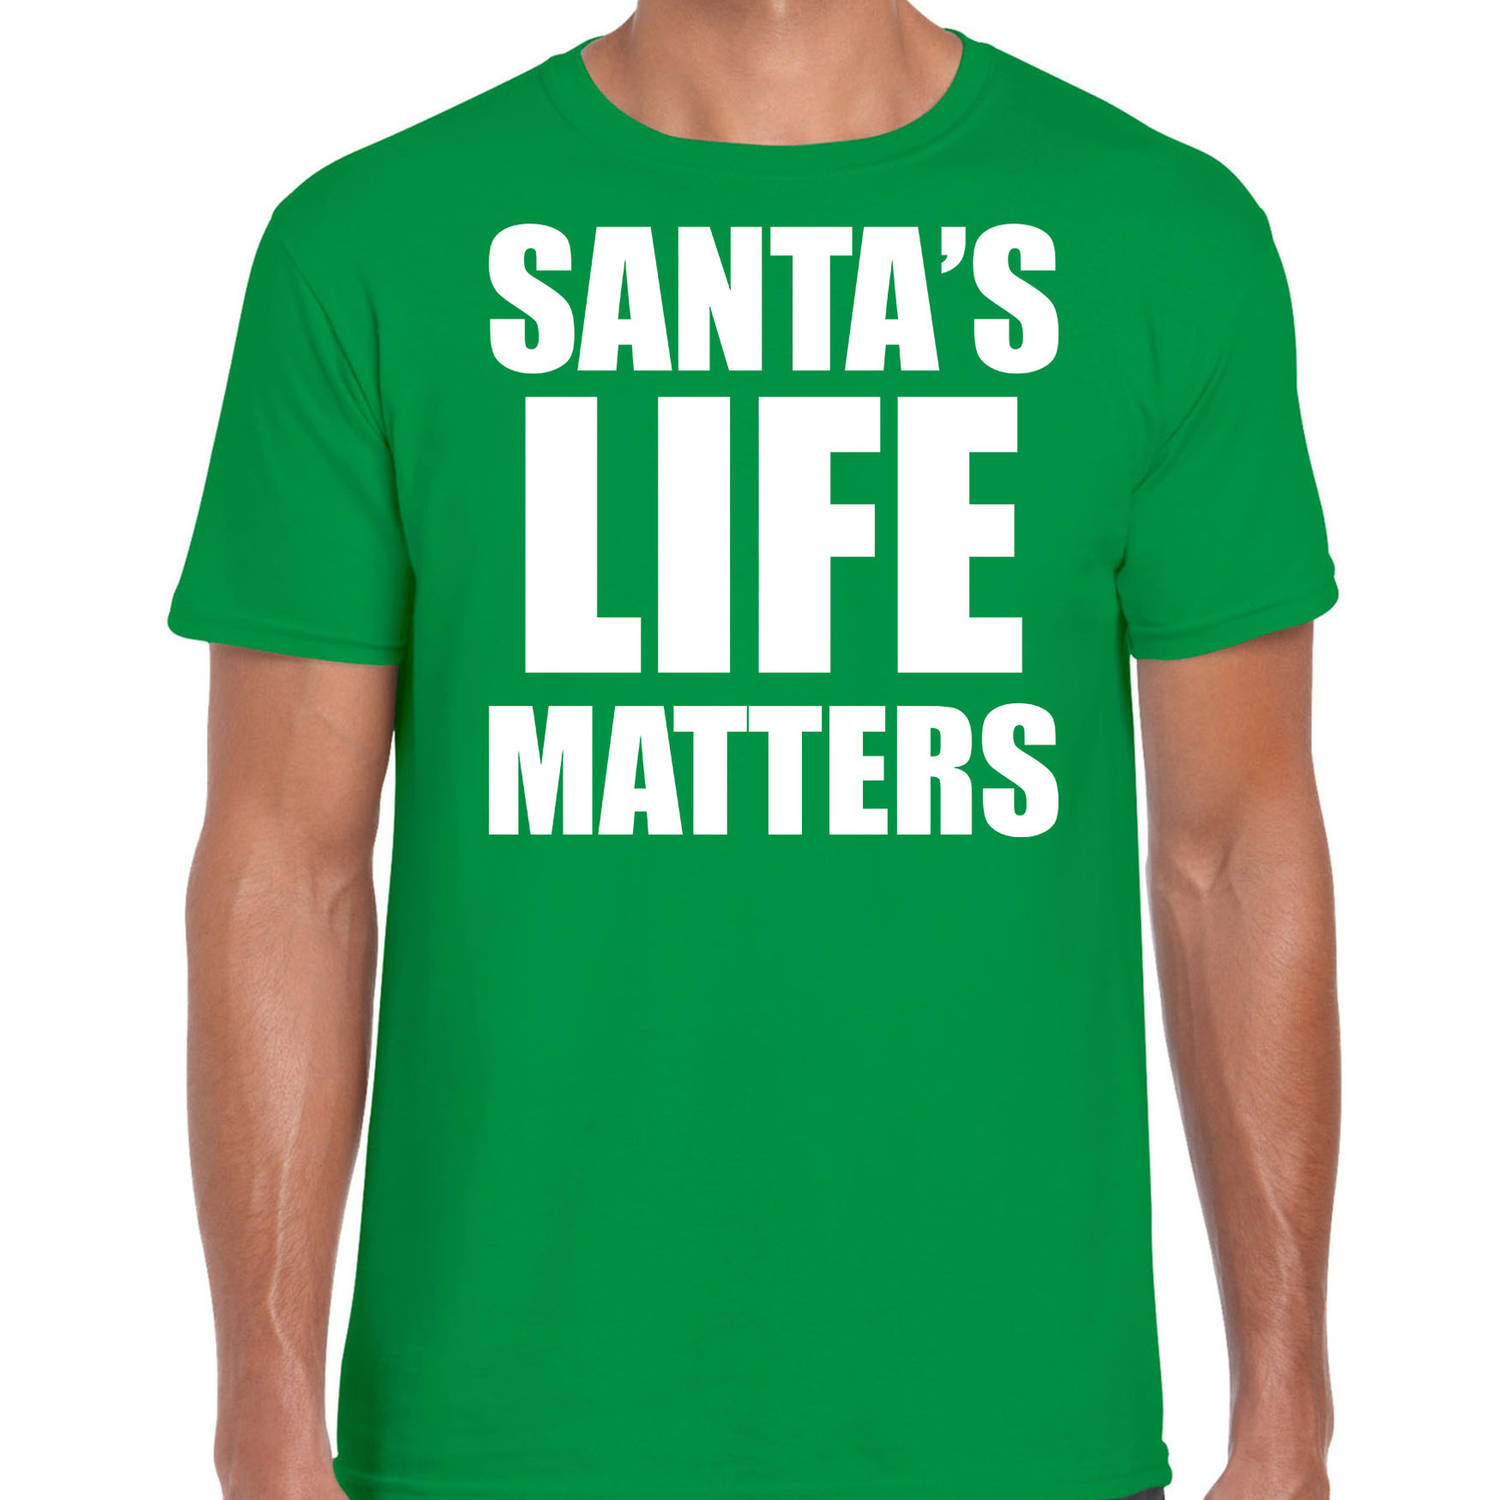 Groen Kerstshirt / Kerstkleding Santas life matters voor heren XL - kerst t-shirts